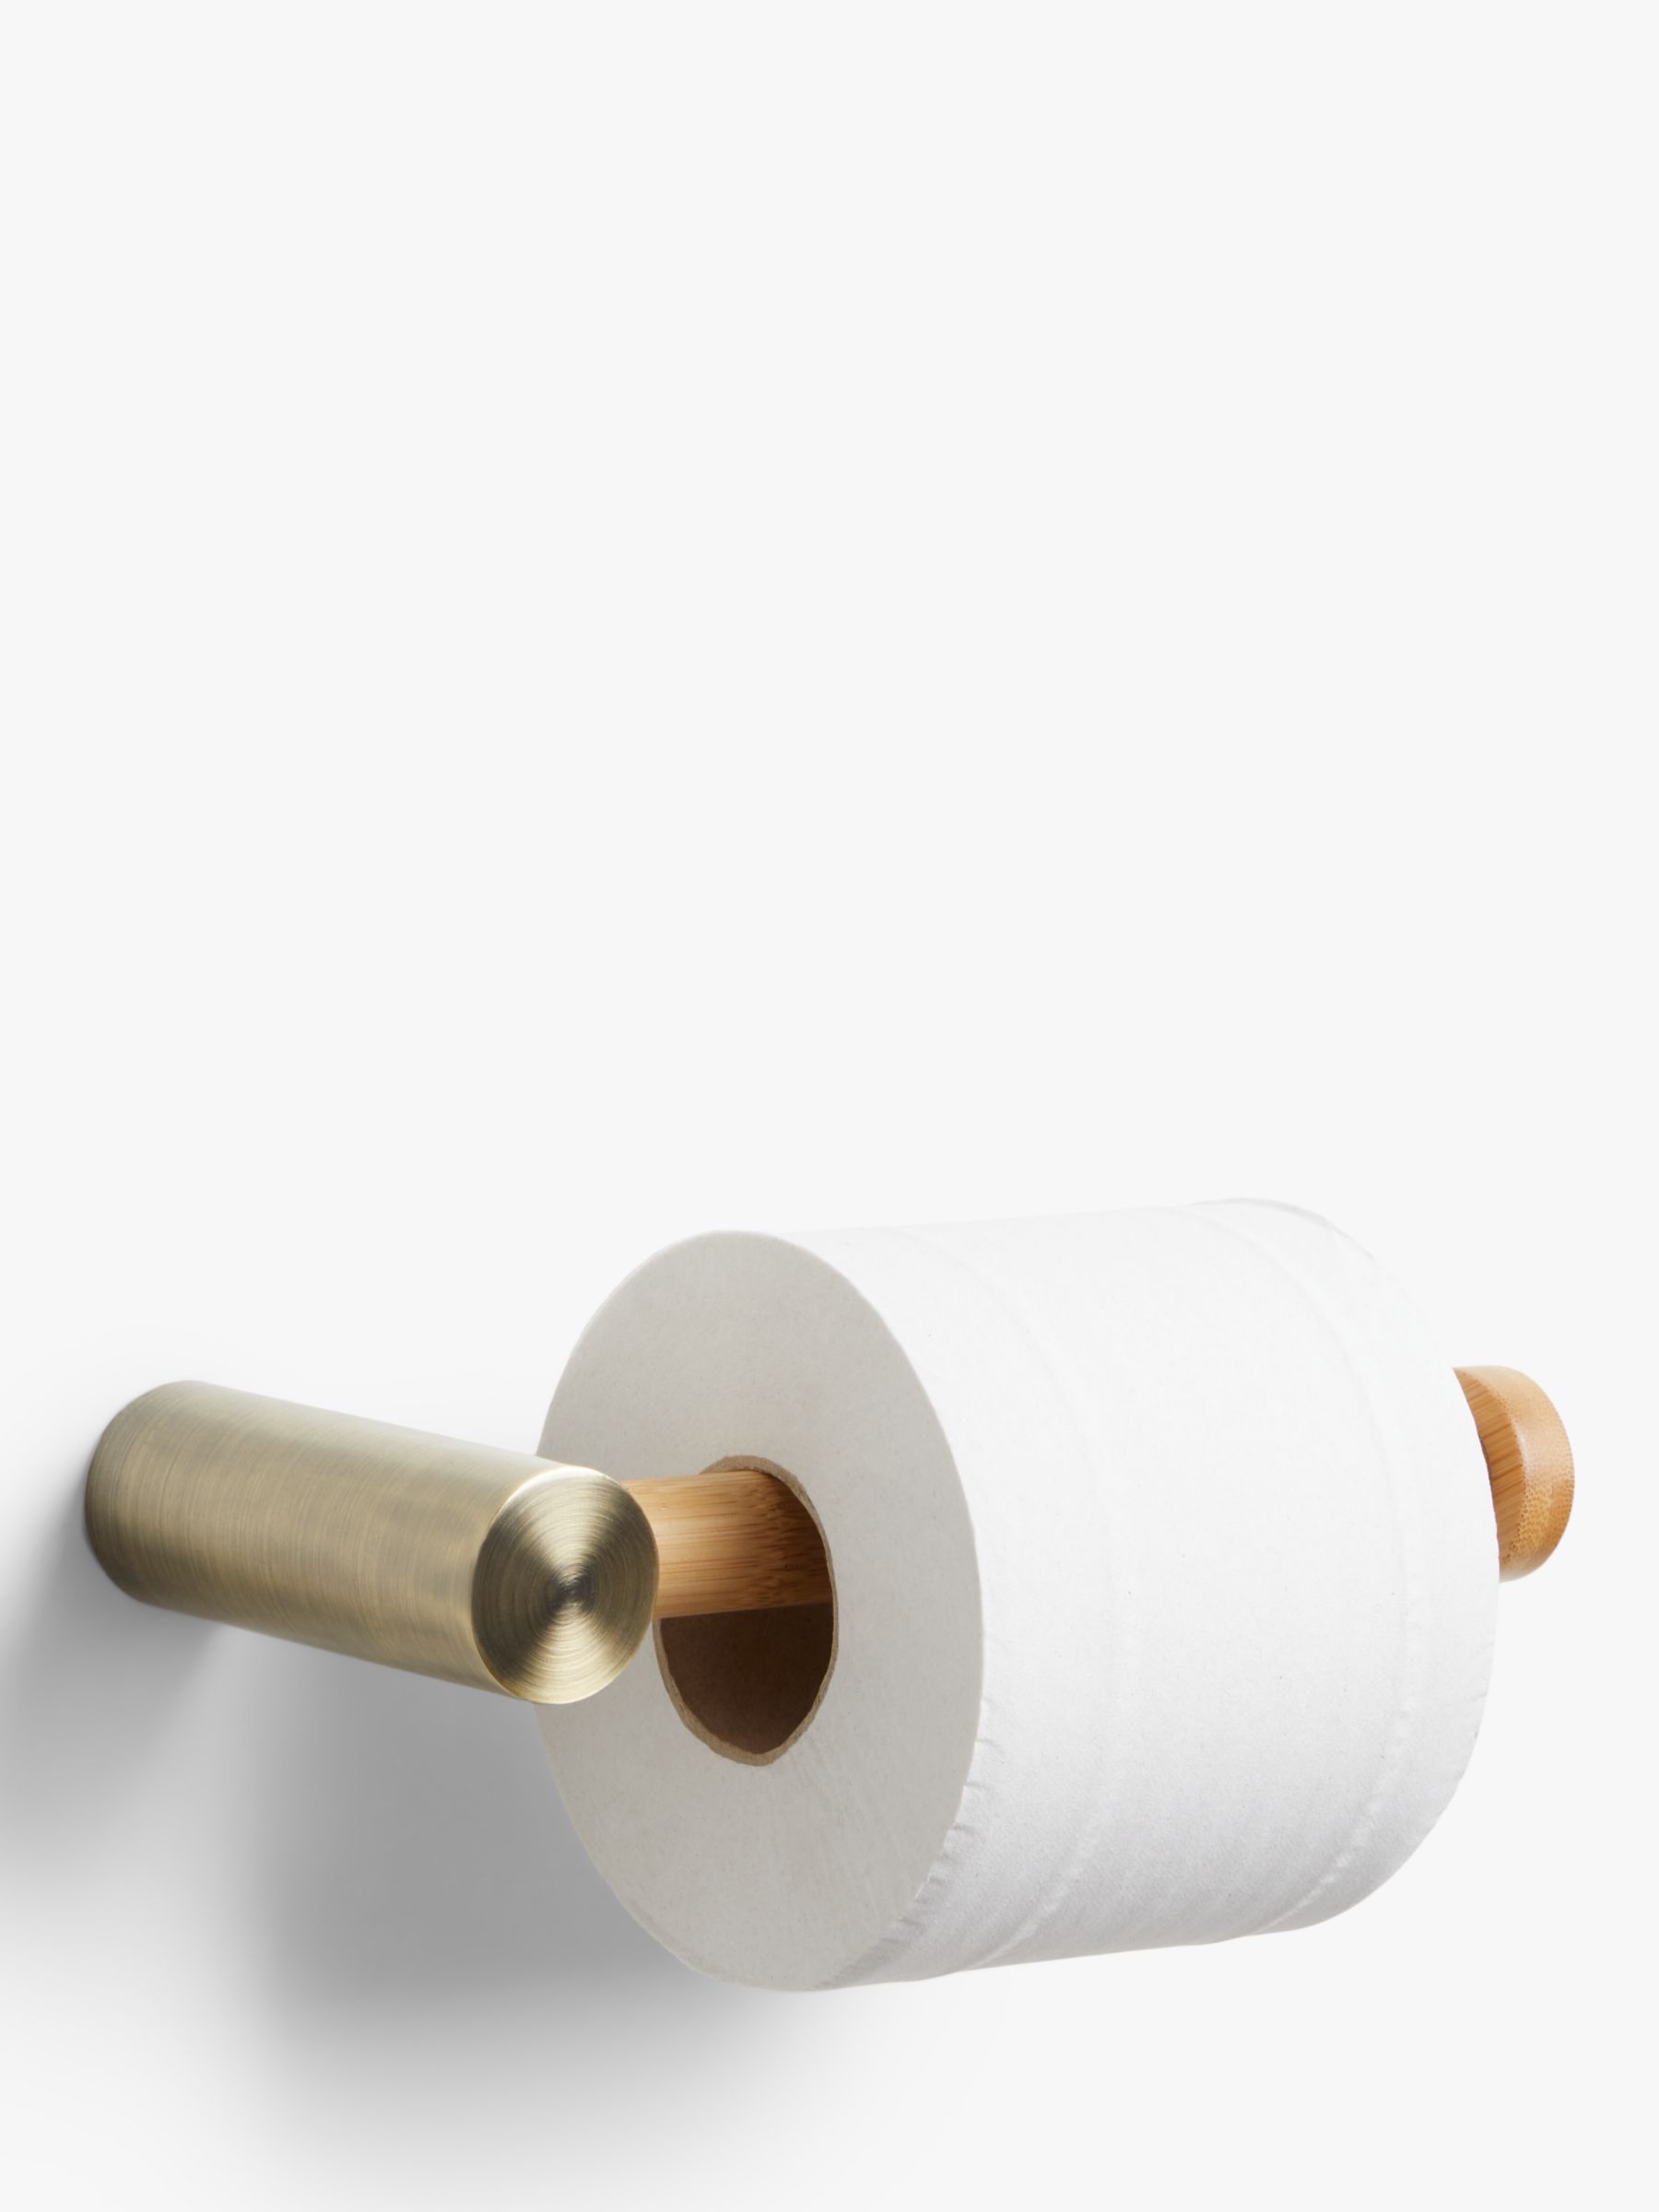 8 Best Gucci toilet paper ideas  gucci toilet paper, gucci, toilet paper